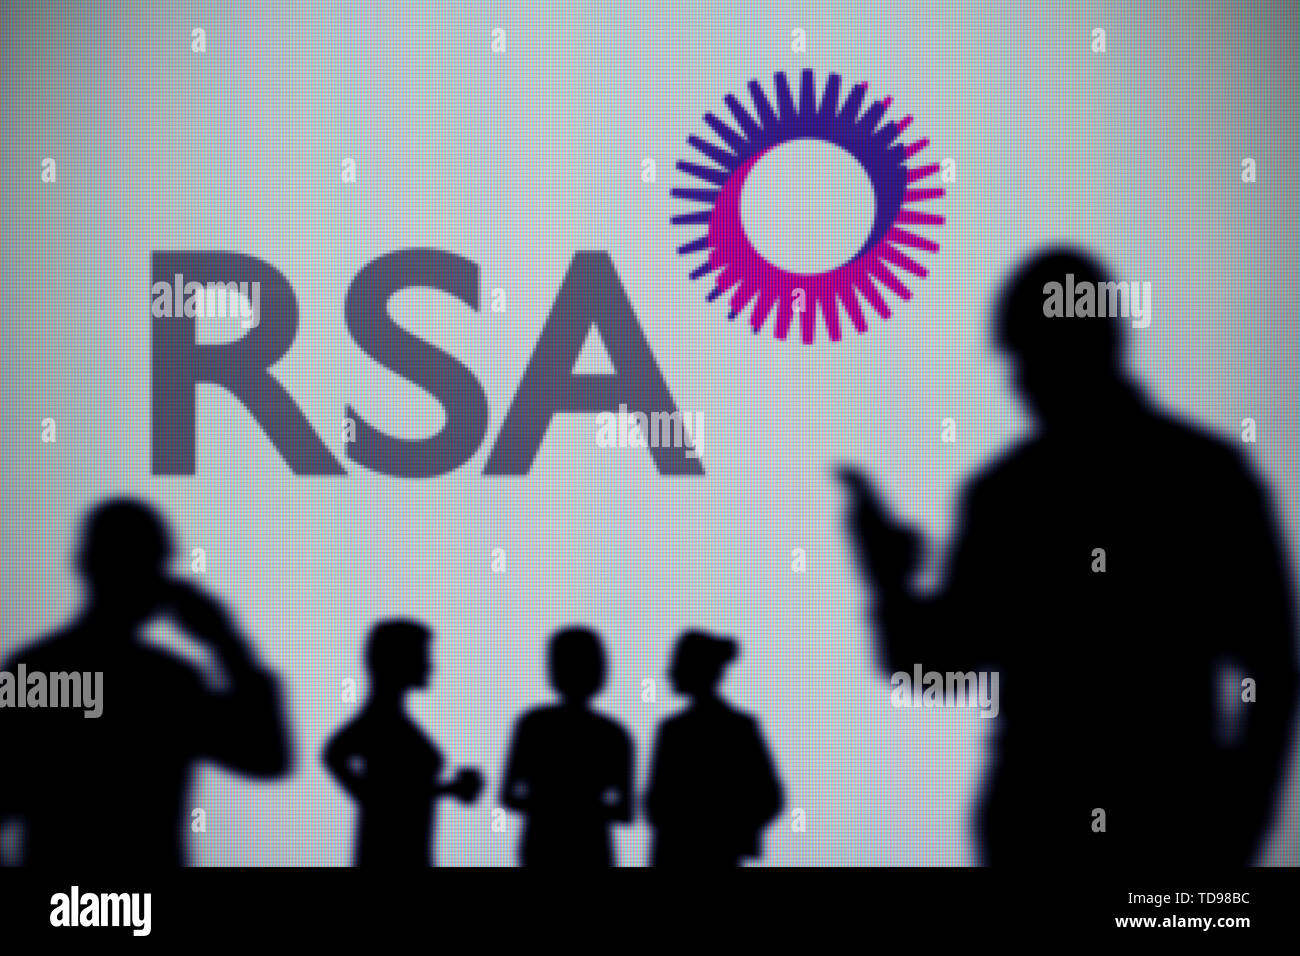 El Royal Sun Alliance (RSA) El logotipo se ve en una pantalla LED en el fondo mientras una silueta persona utiliza un smartphone (uso Editorial solamente) Foto de stock